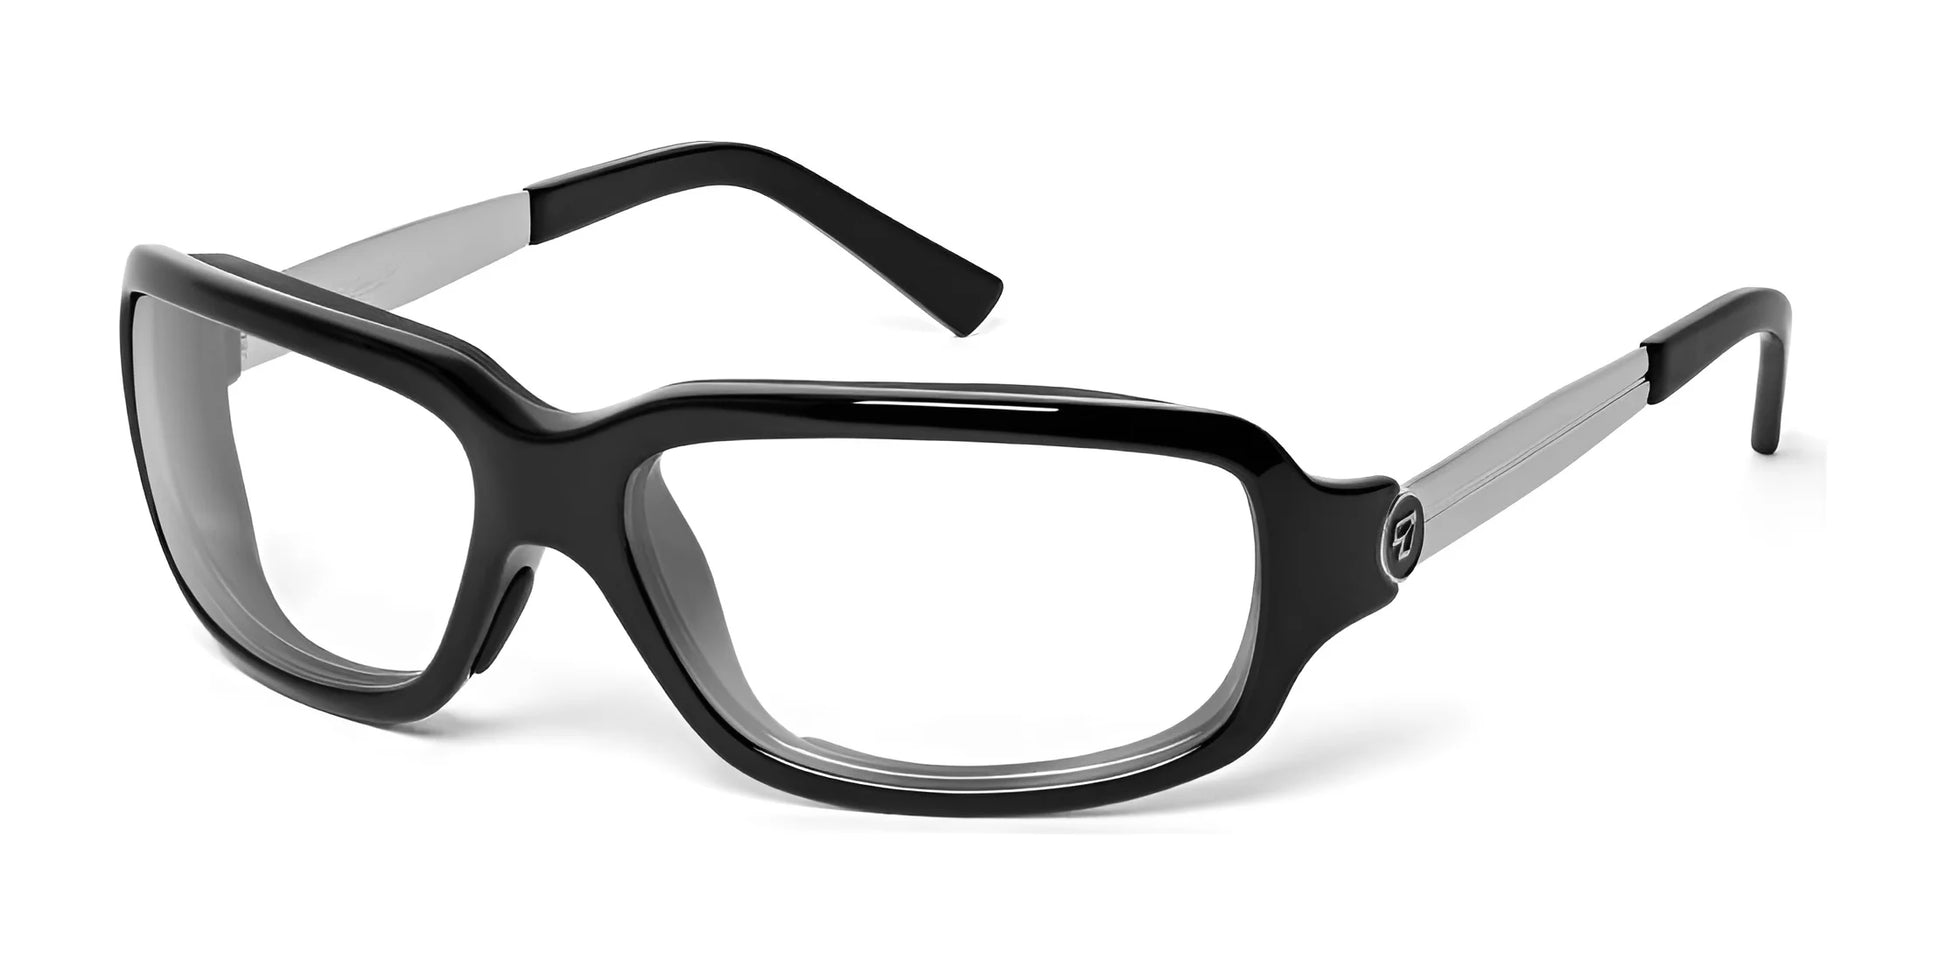 7eye Tahoe Sunglasses Glossy Black / Clear